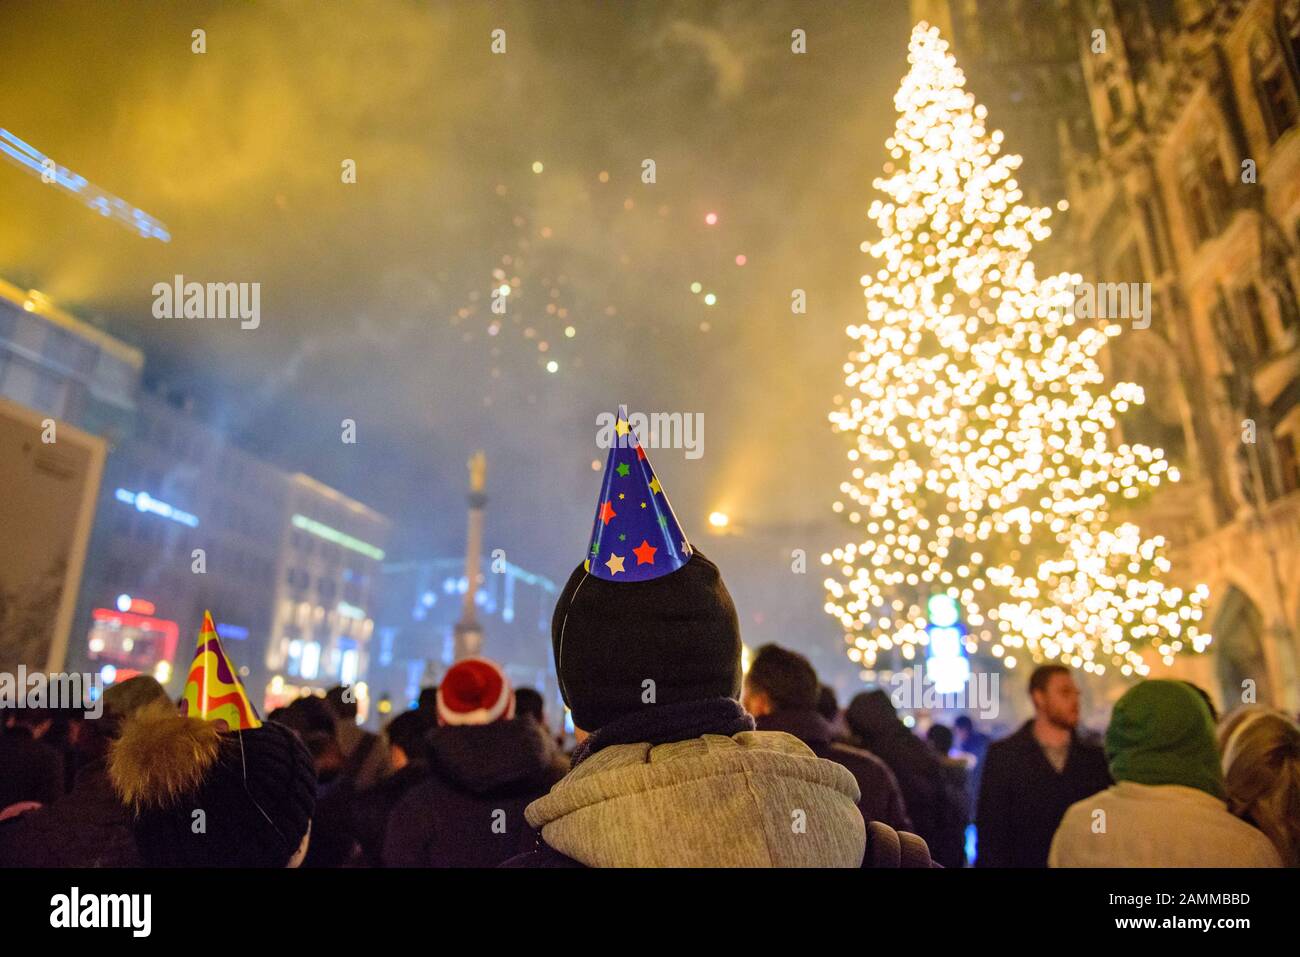 Le persone si meravigliano davanti ai fuochi d'artificio sulla Marienplatz di Monaco alla fine dell'anno 2016/17. [traduzione automatizzata] Foto Stock